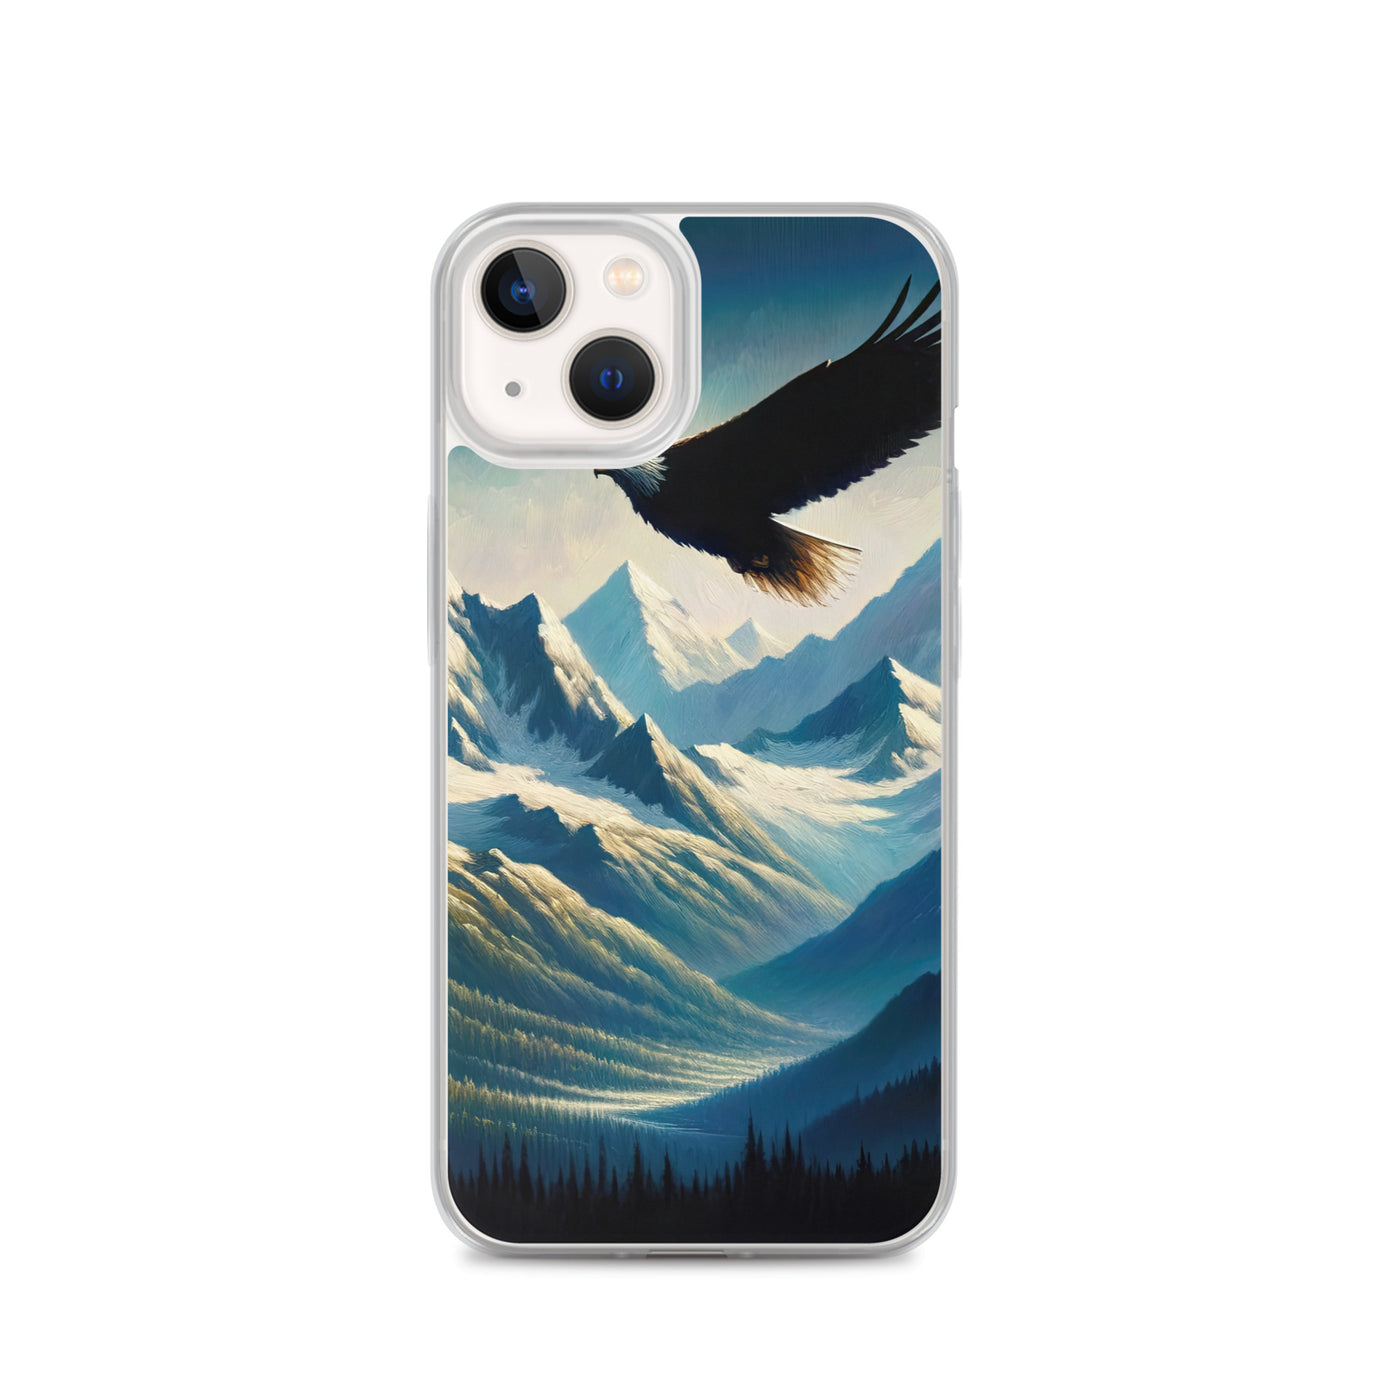 Ölgemälde eines Adlers vor schneebedeckten Bergsilhouetten - iPhone Schutzhülle (durchsichtig) berge xxx yyy zzz iPhone 13